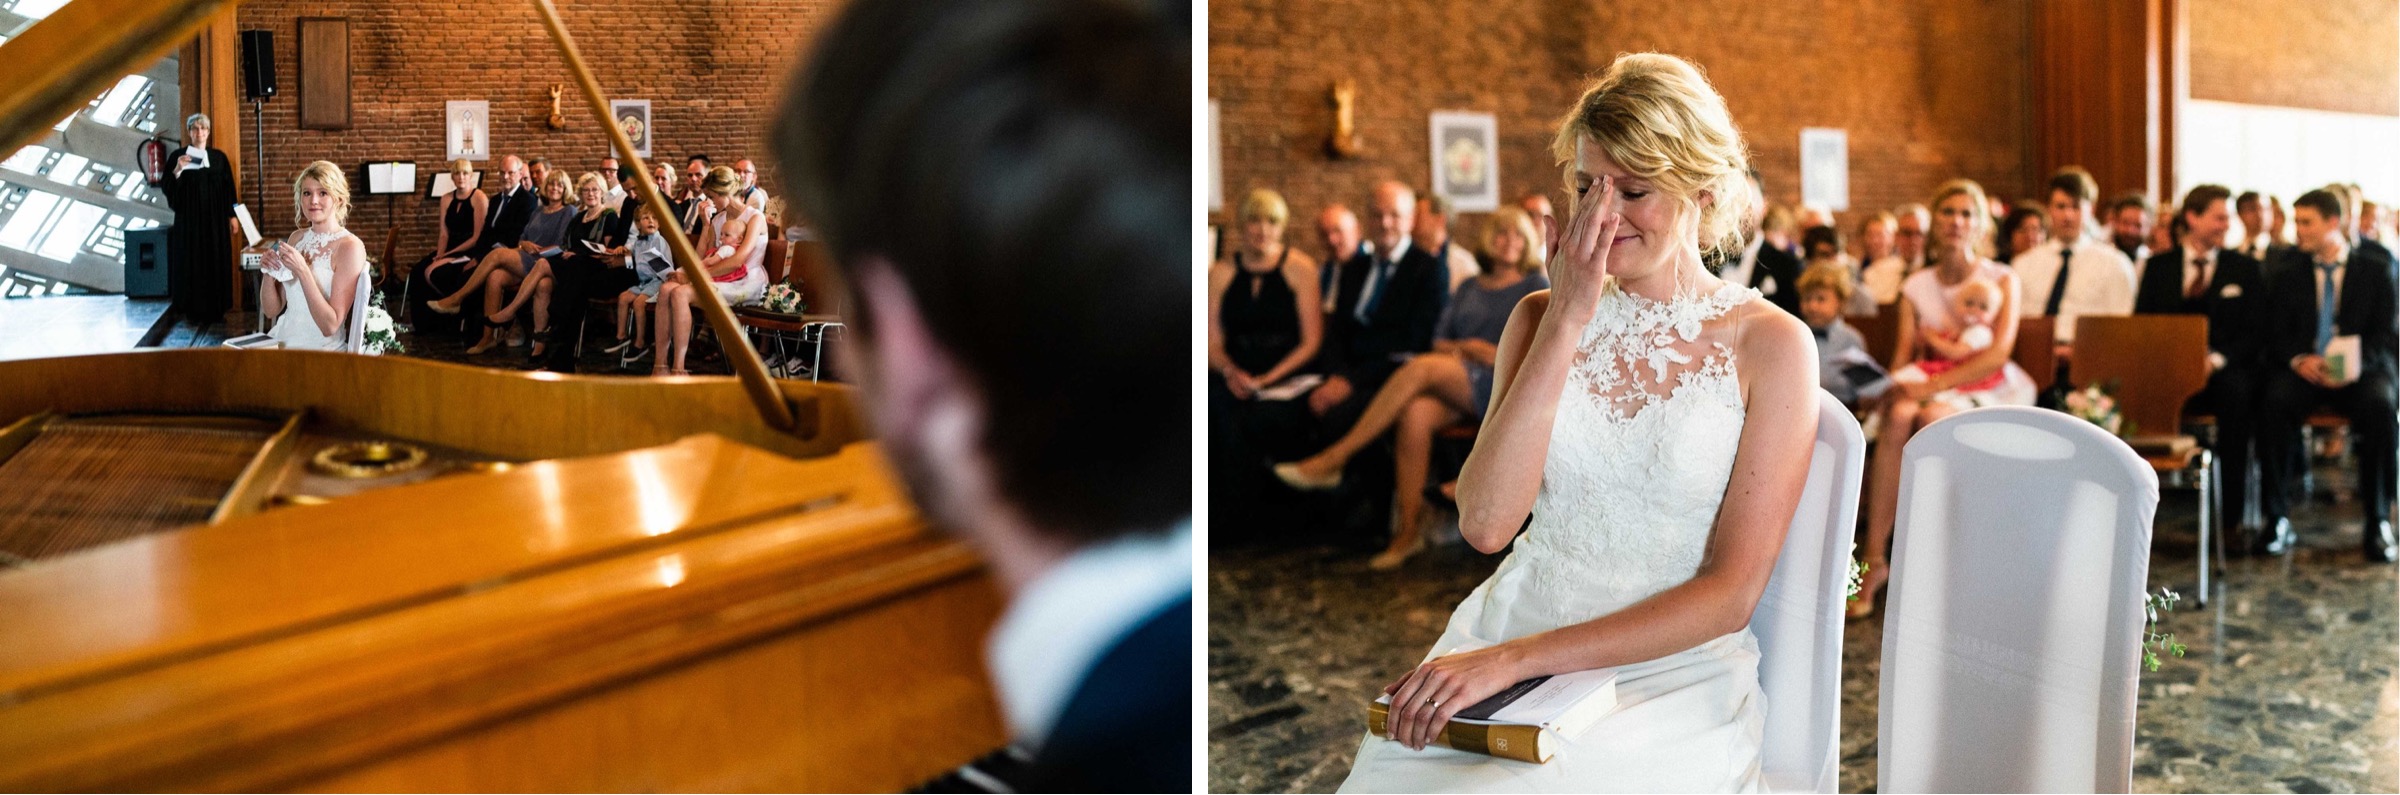 Hochzeit in Paderborn: zu Tränen gerührte Braut